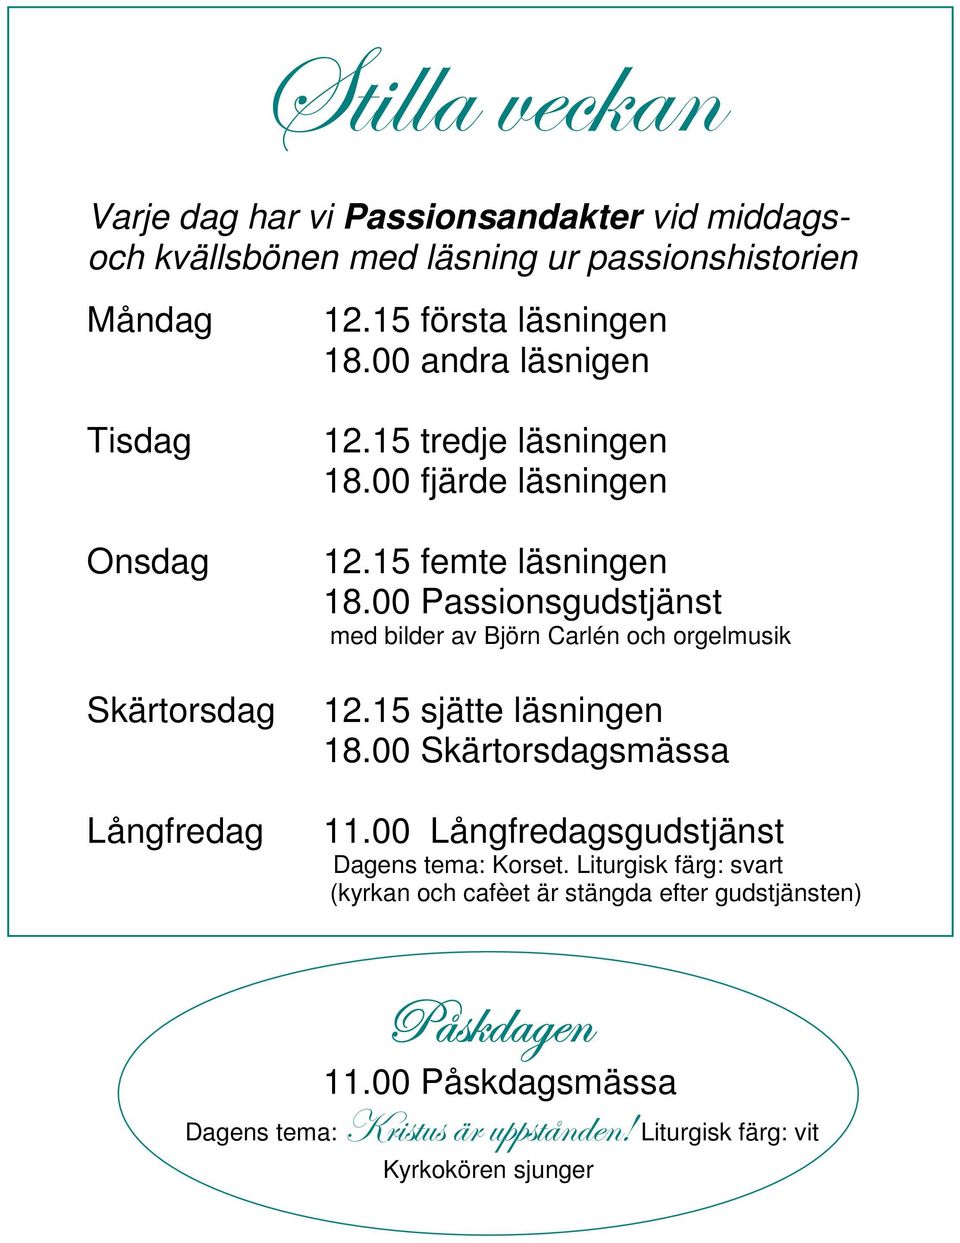 00 Passionsgudstjänst med bilder av Björn Carlén och orgelmusik 12.15 sjätte läsningen 18.00 Skärtorsdagsmässa 11.